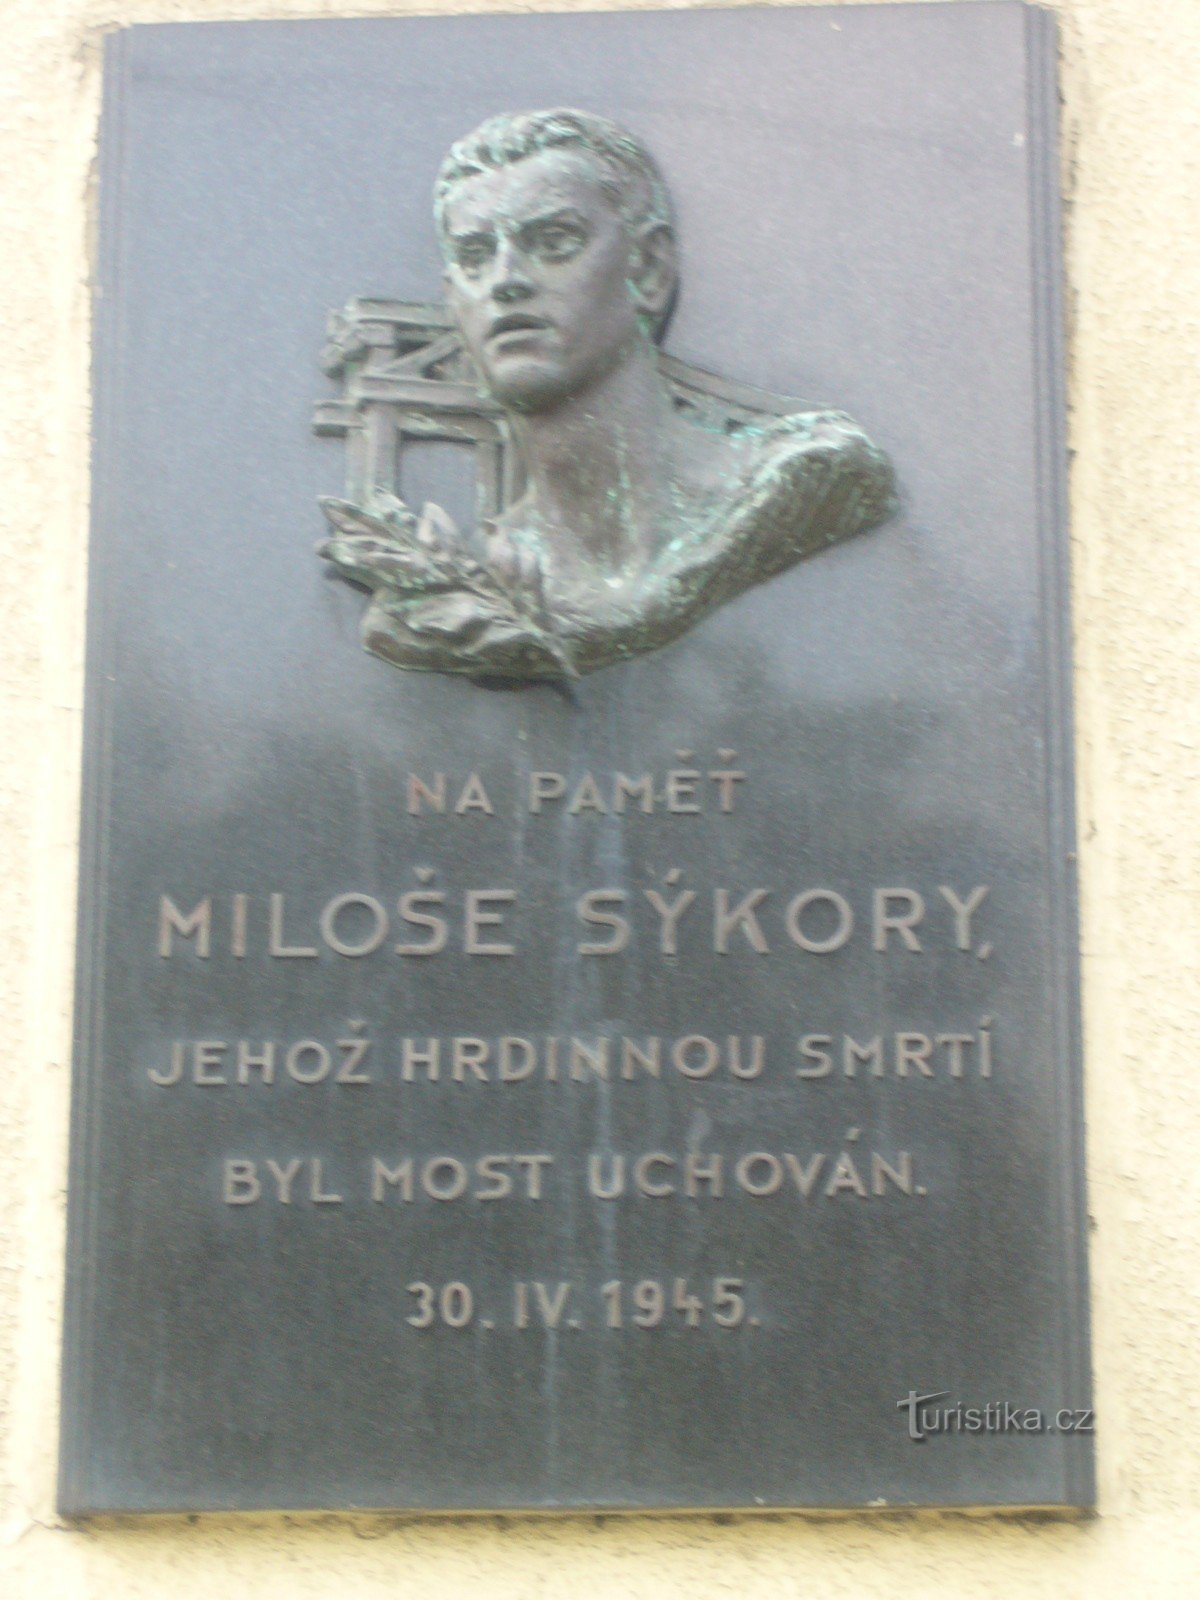 Monument to Miloš Sýkora